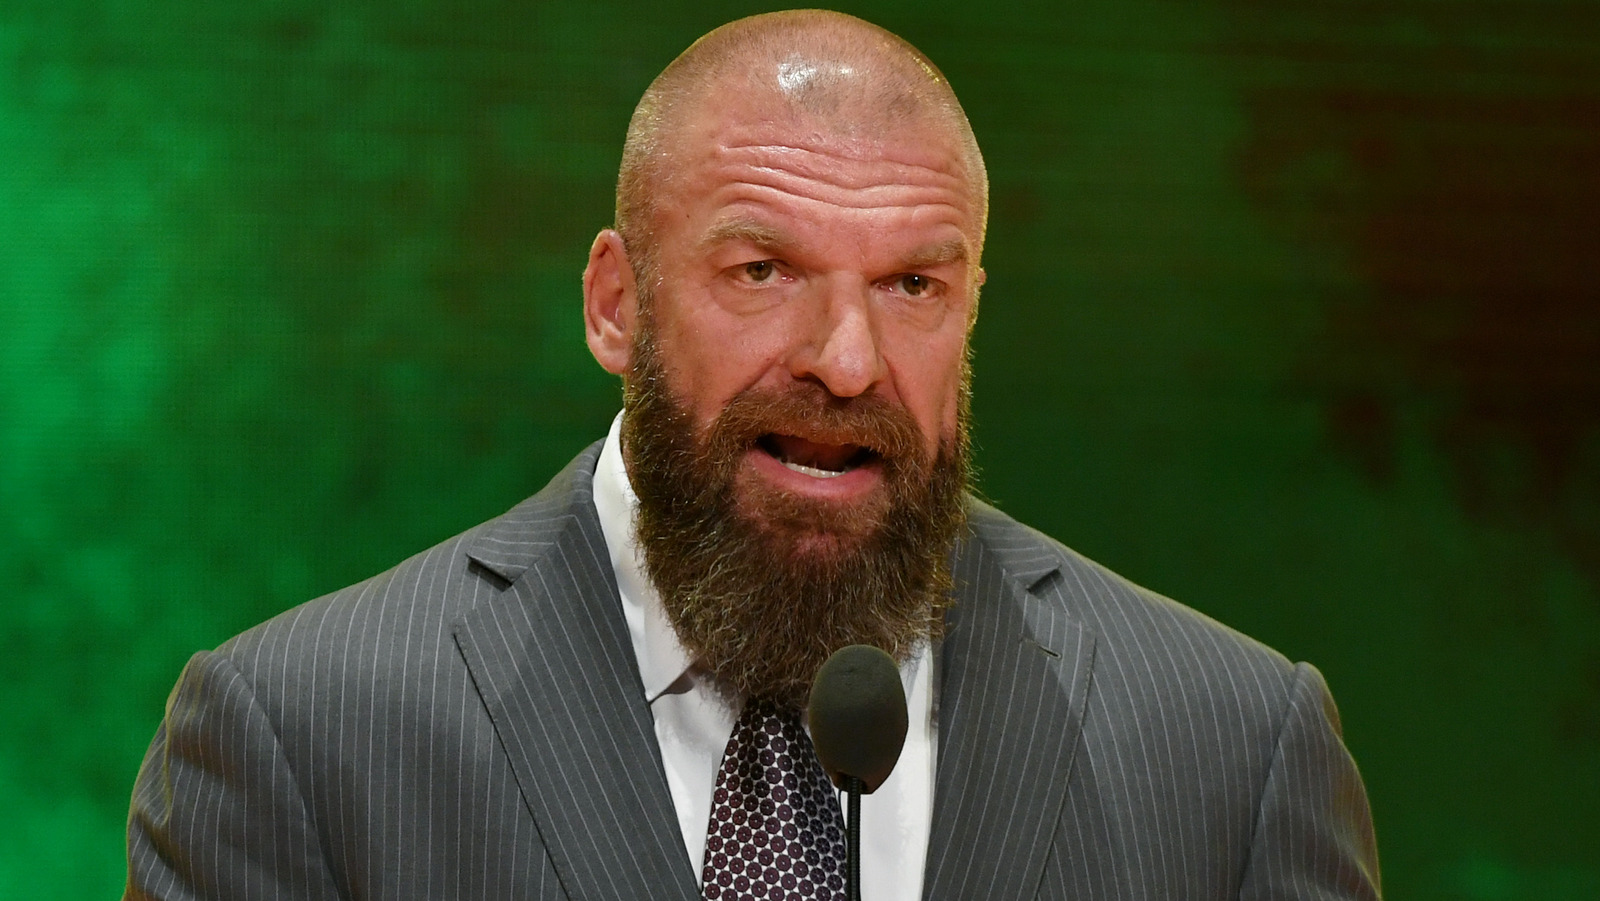 Según se informa, WWE presenta una nueva regla en respuesta a la Ley de portación sin permiso de Florida